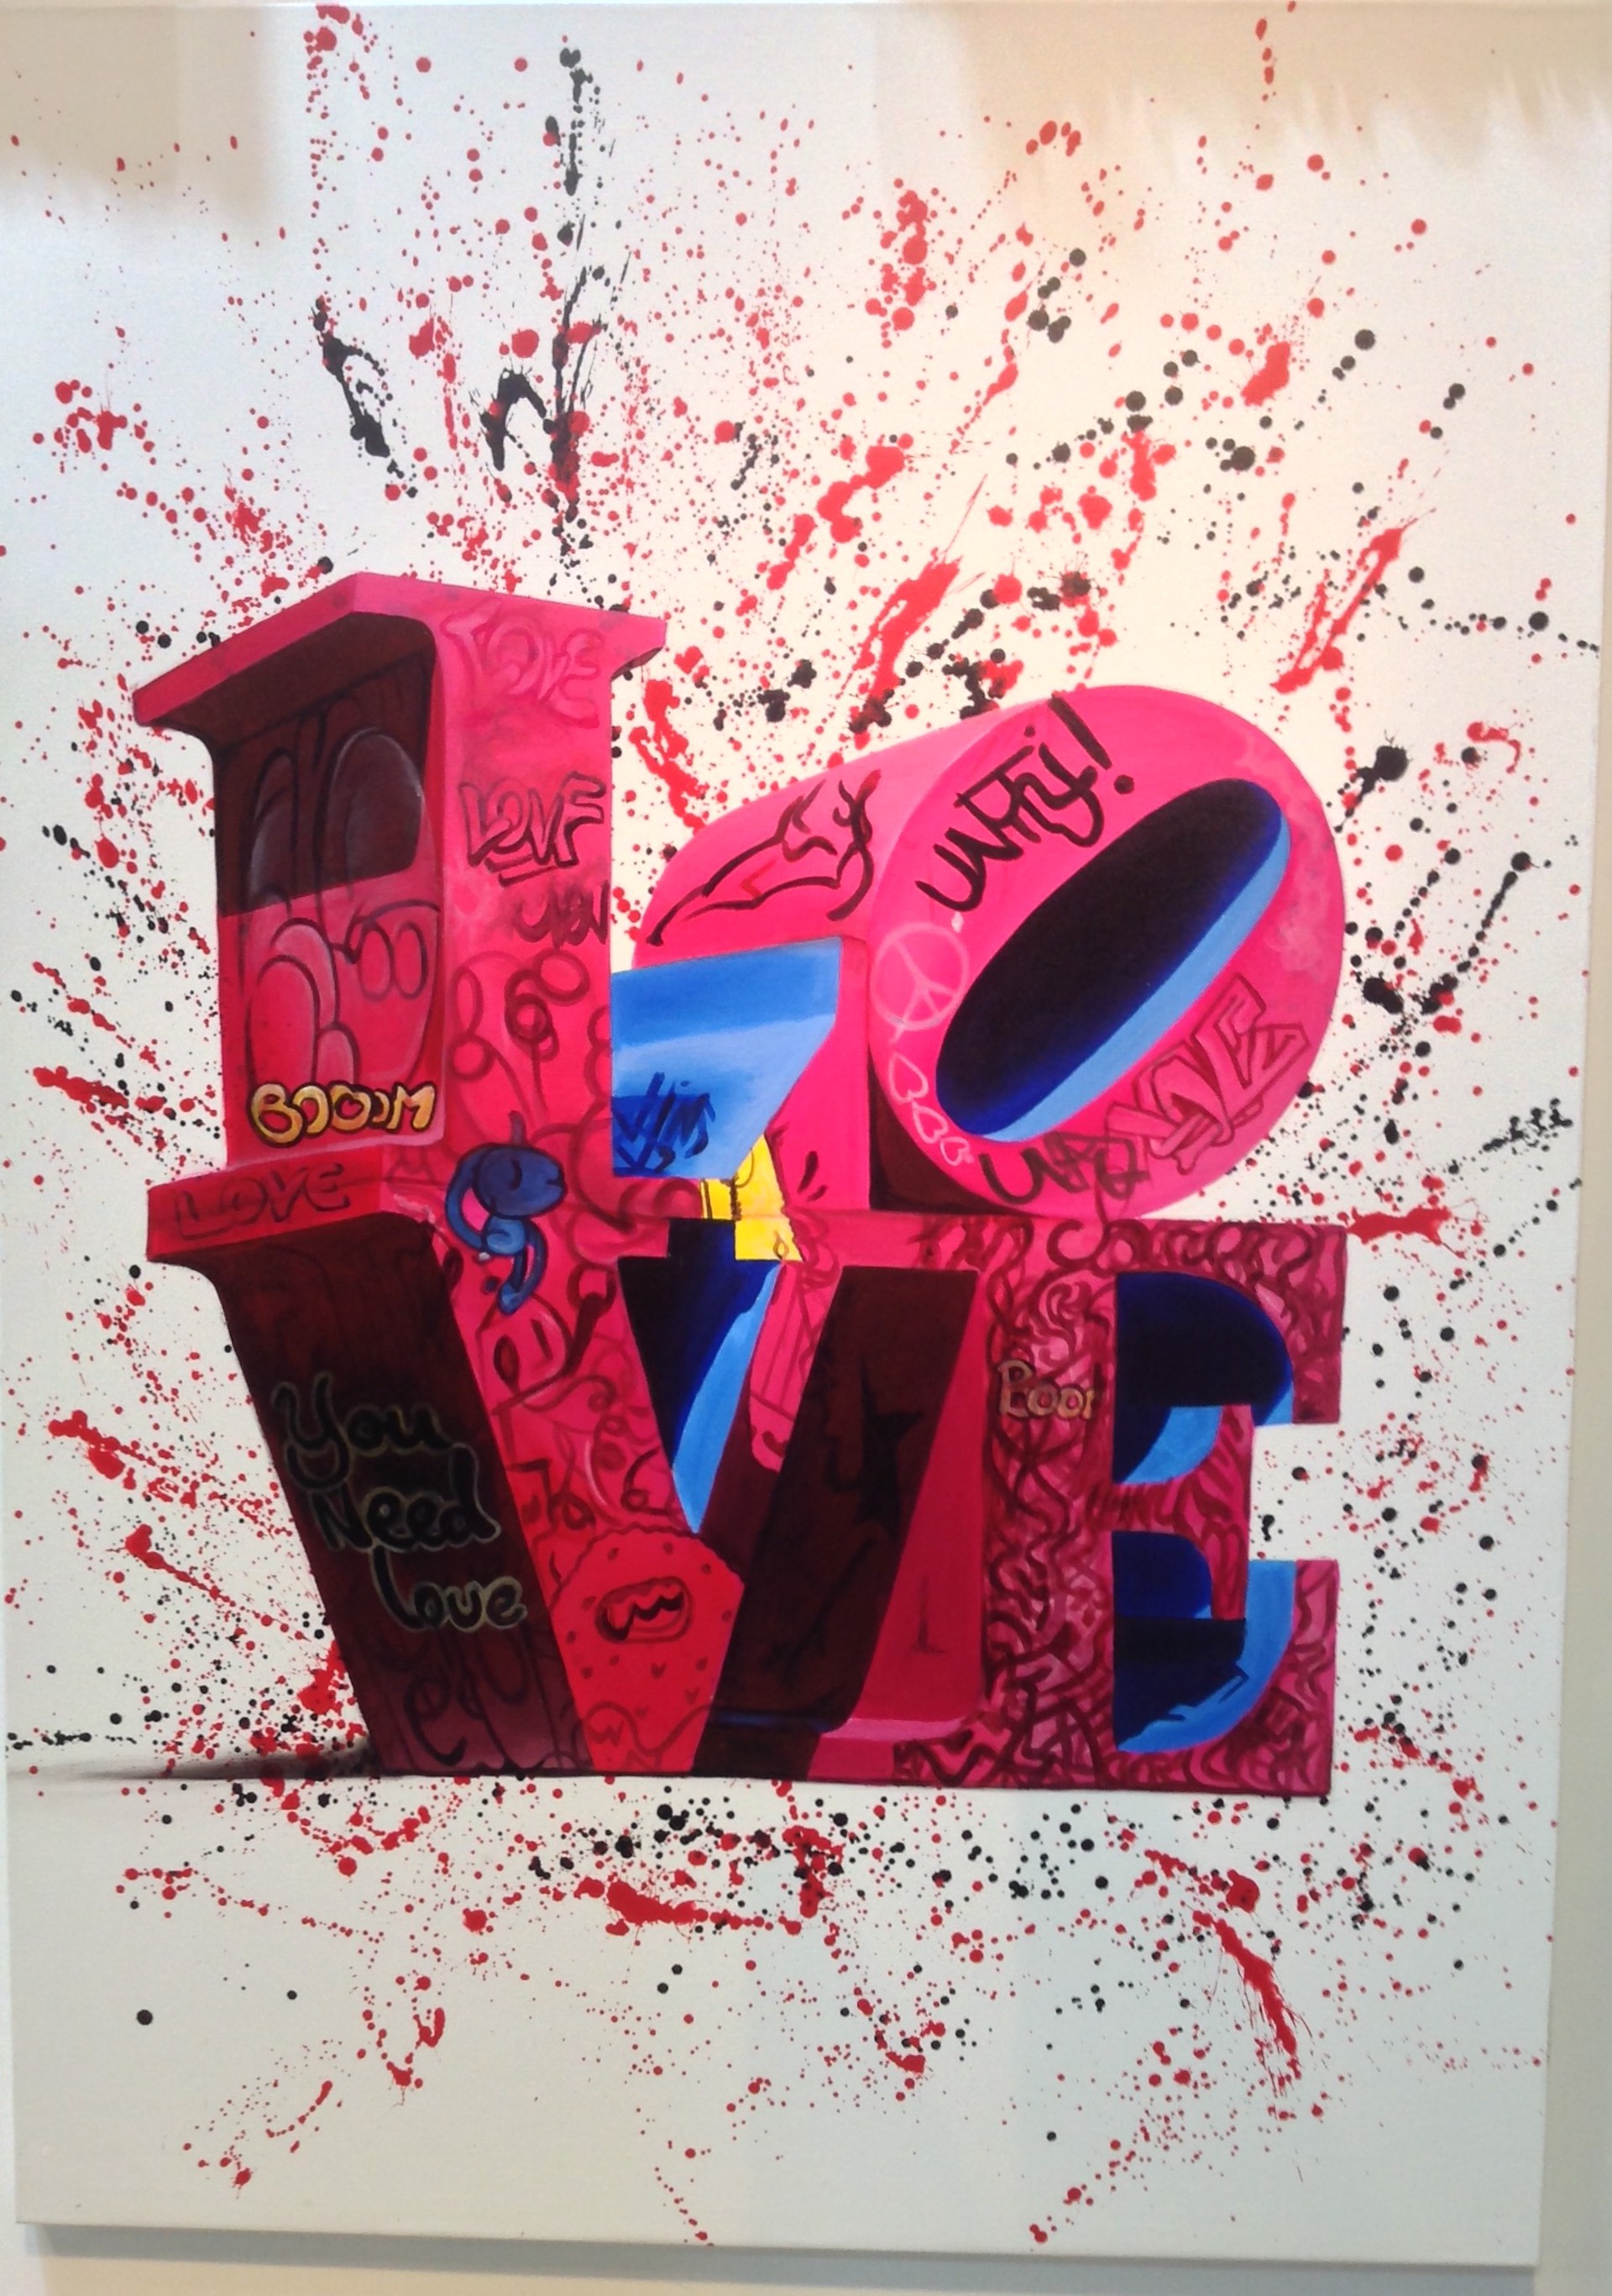 Graffiti LOVE by BuMa Project